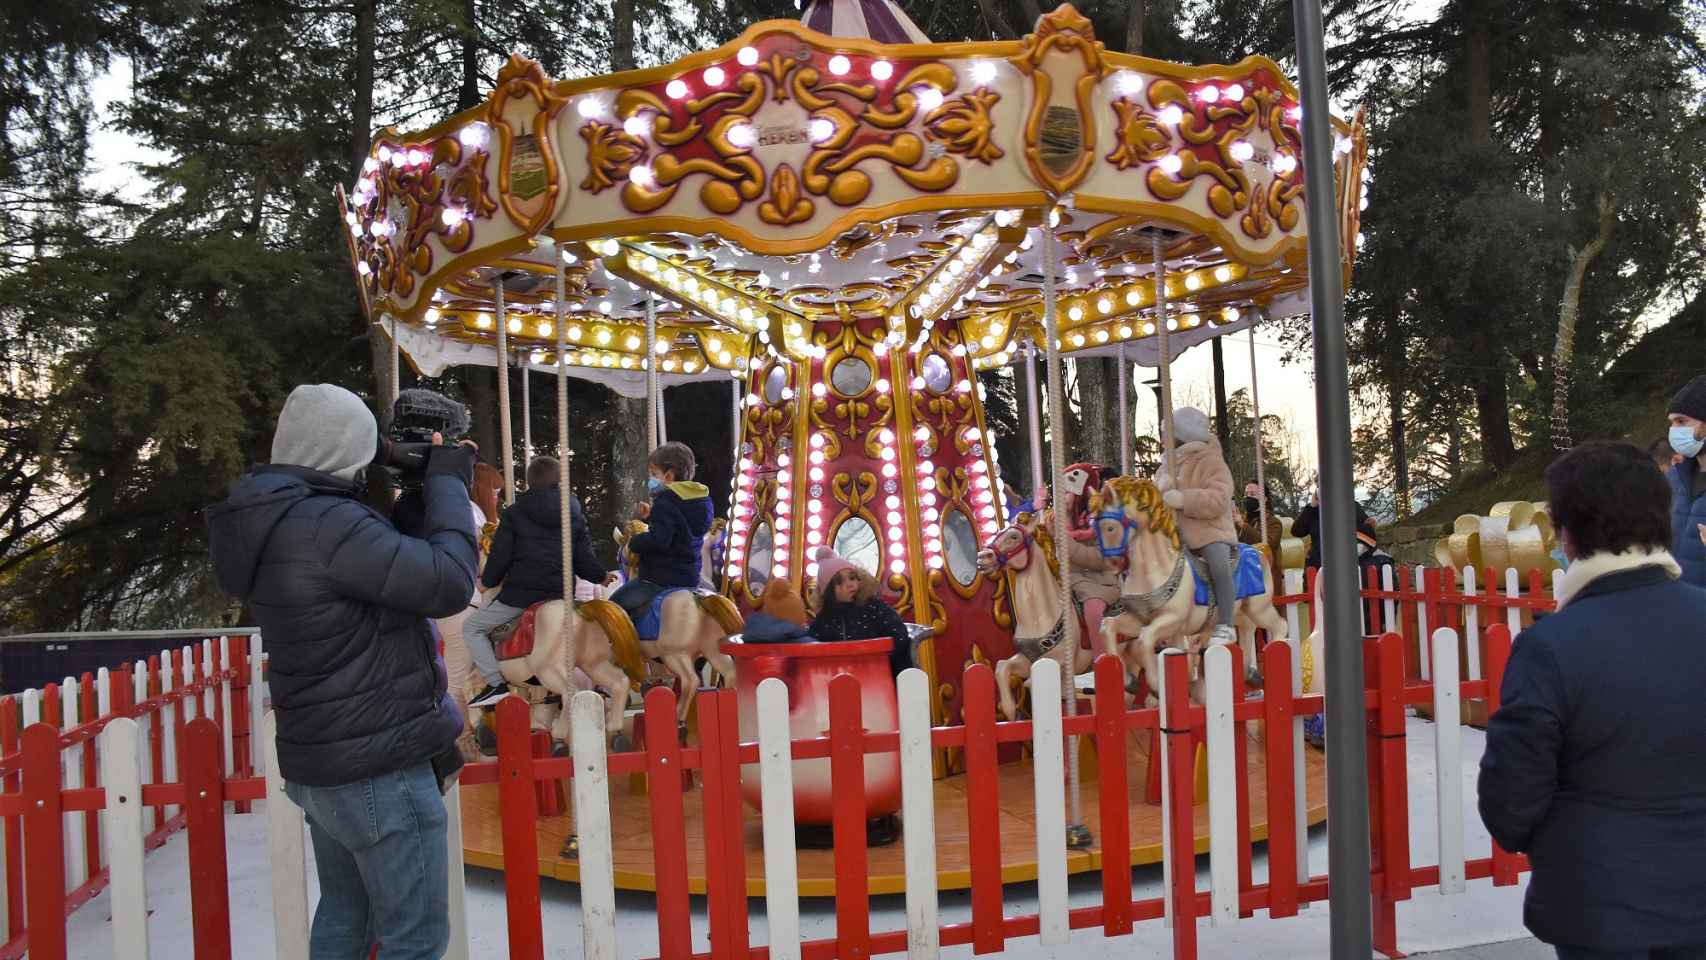 Una carrusel parisino de época para diversión de los más pequeños